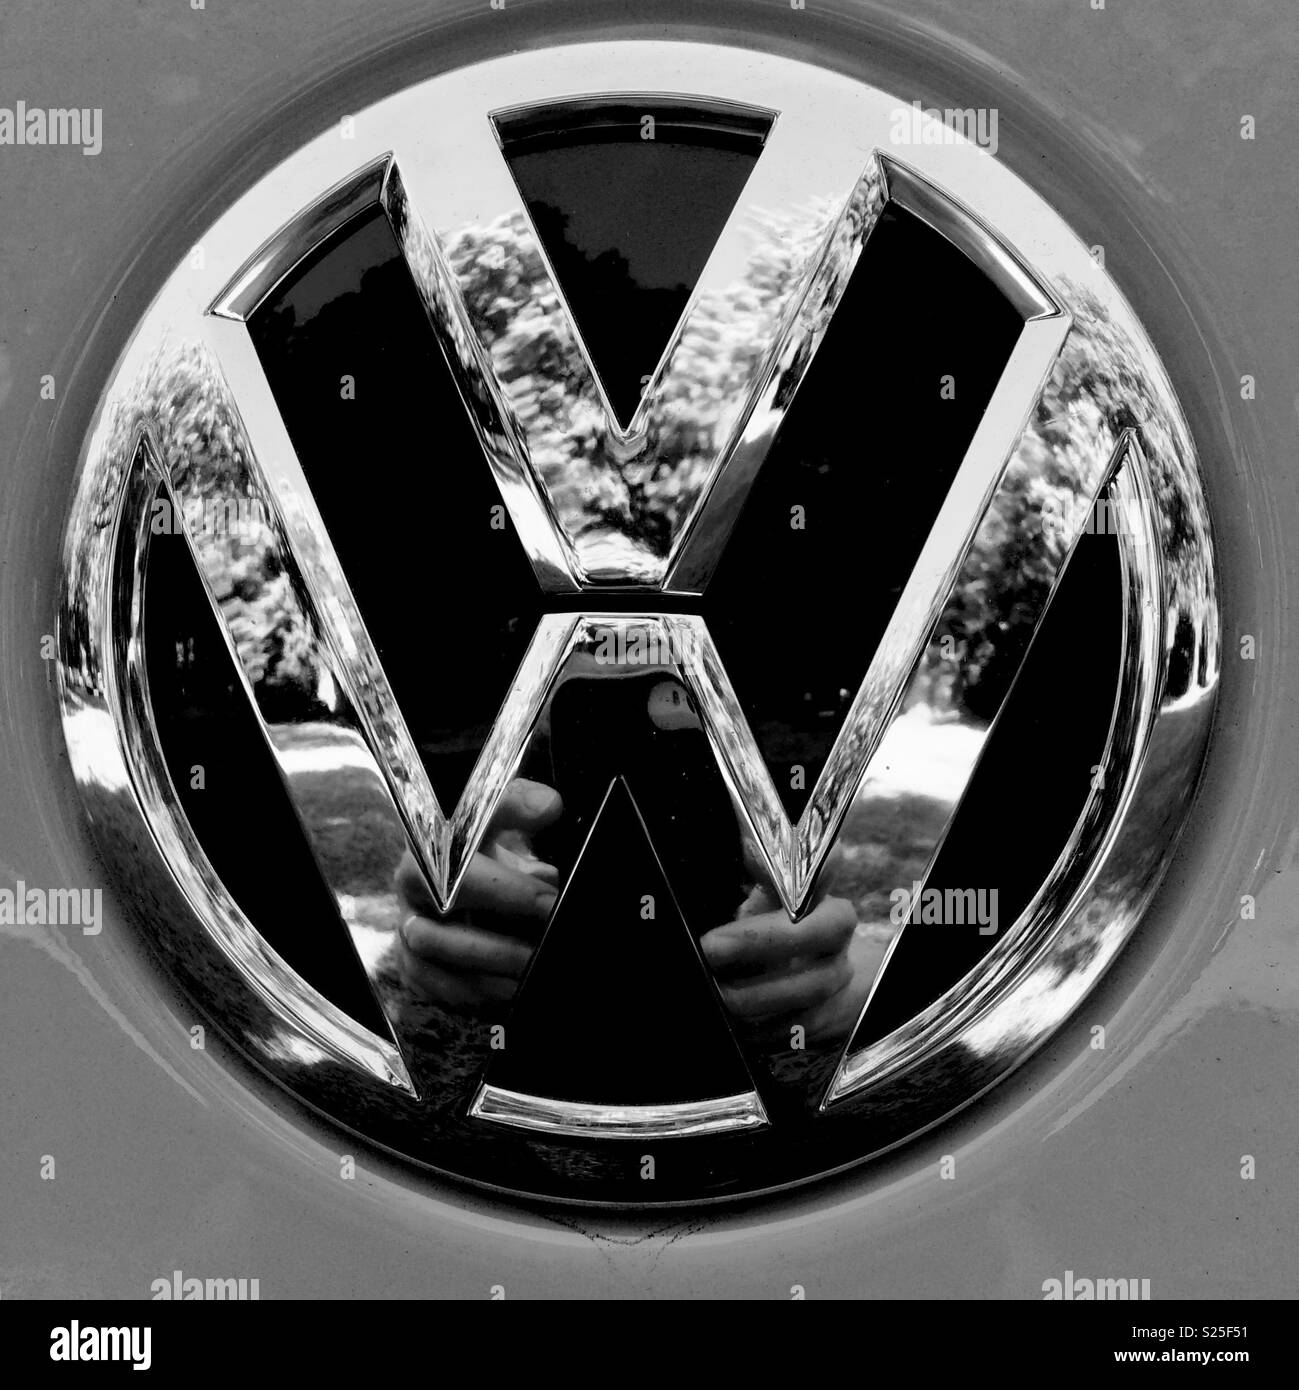 Vw logo Schwarzweiß-Stockfotos und -bilder - Alamy